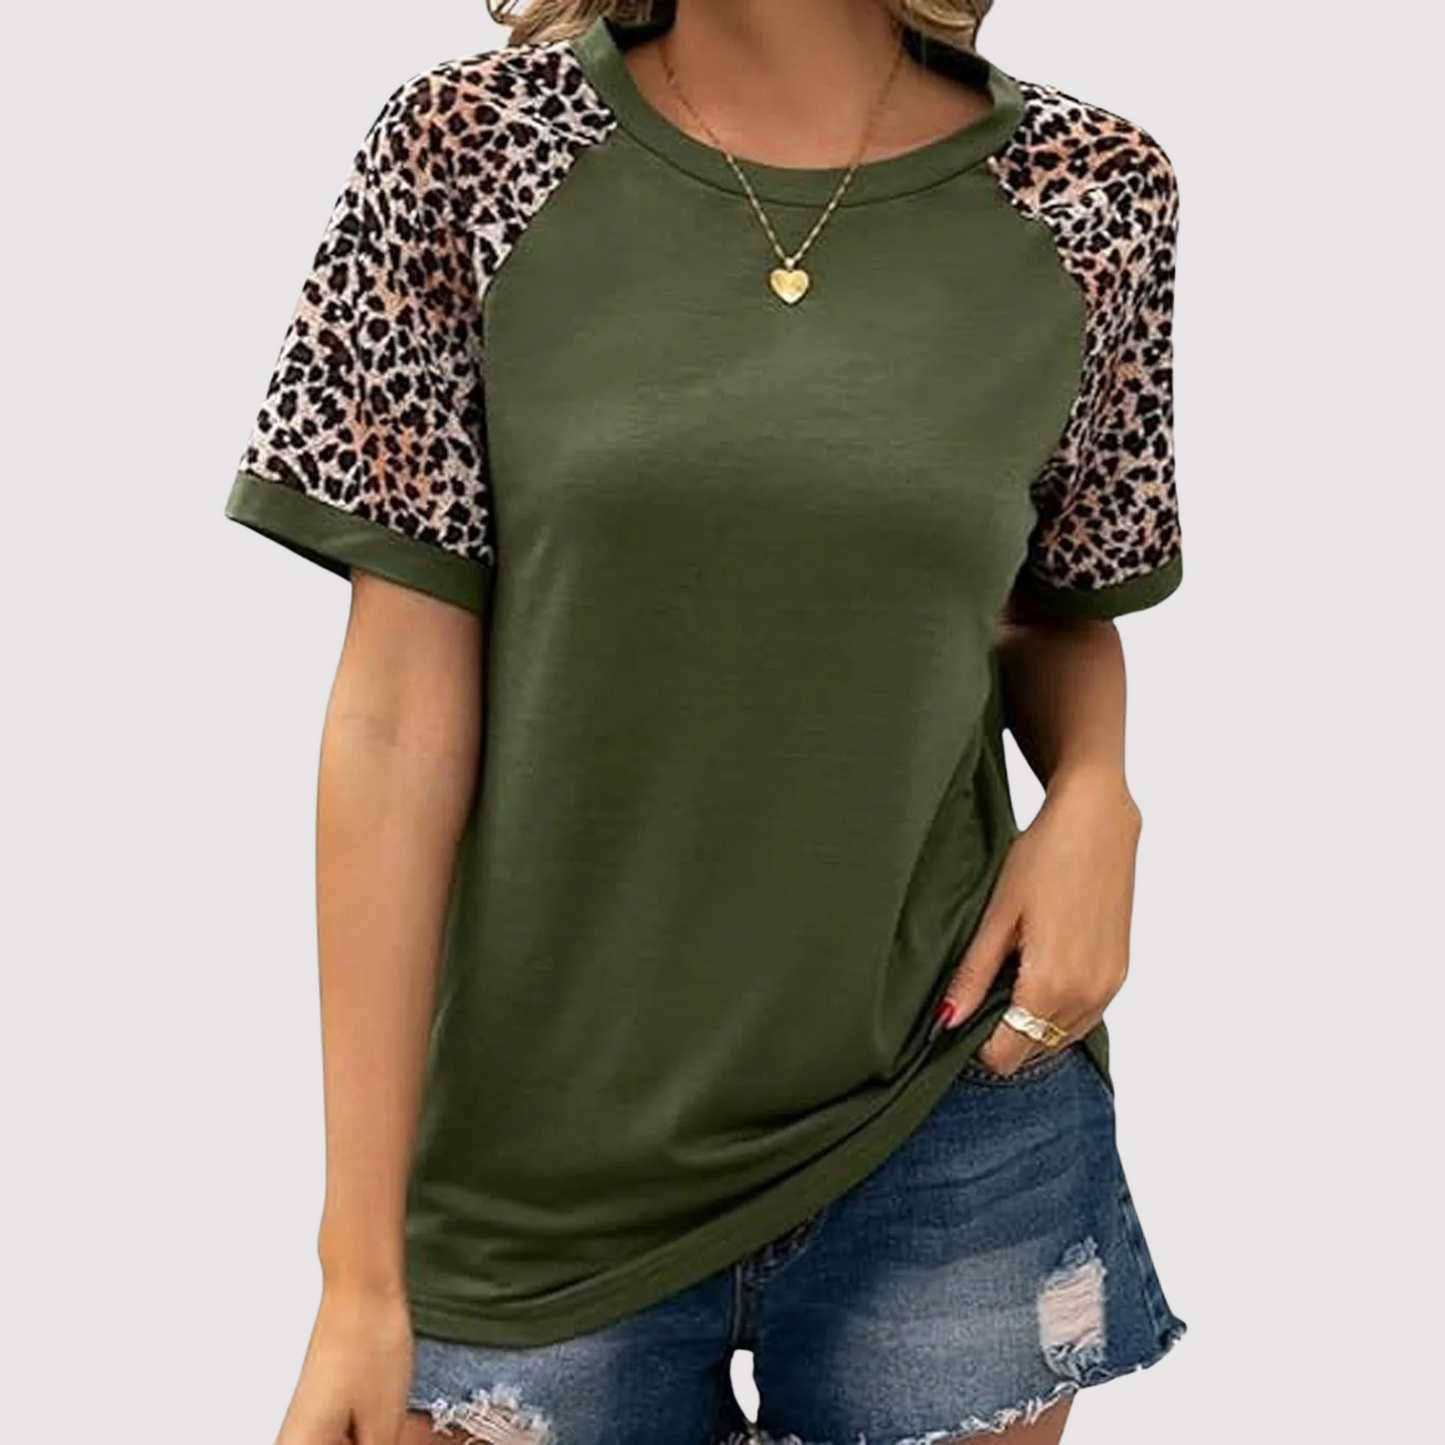 Elsie - Rundhals-Shirt mit Leopardenmuster